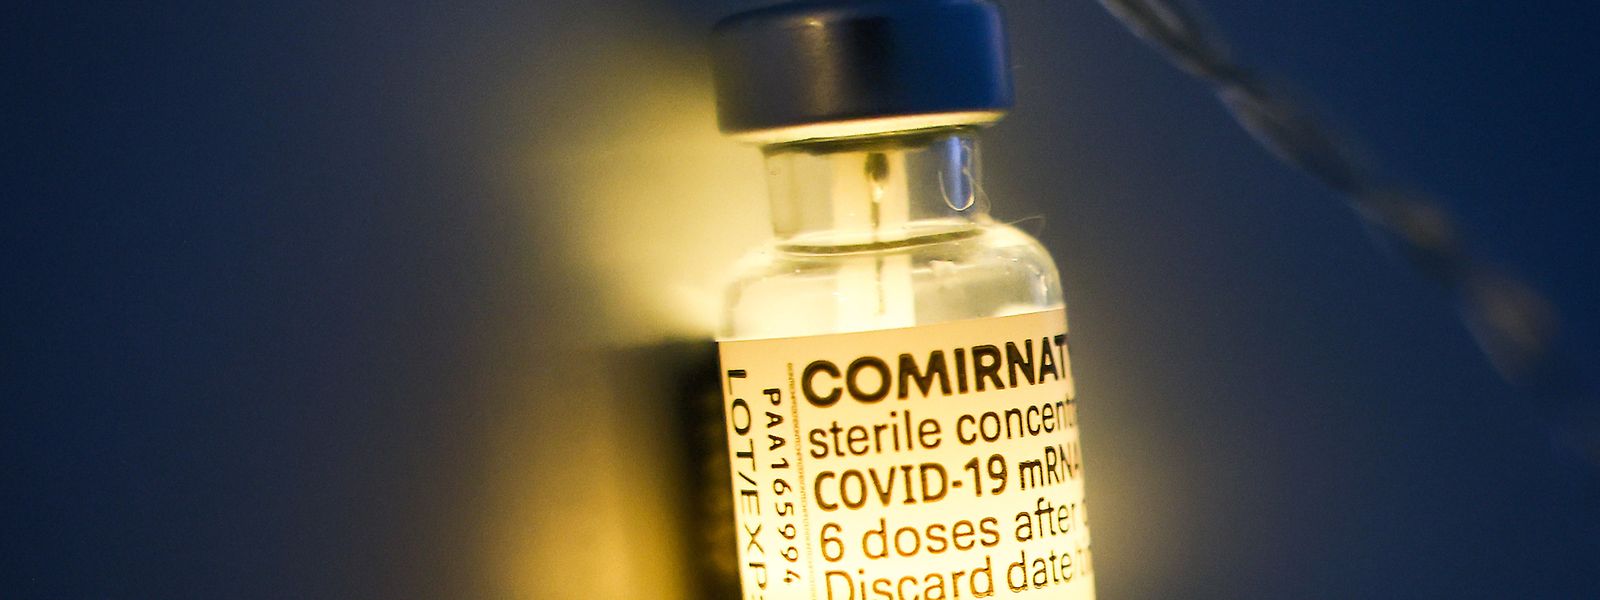 Der Comirnaty-Impfstoff von Biontech/Pfizer ist in Europa für 5- bis 11-Jährige zugelassen.